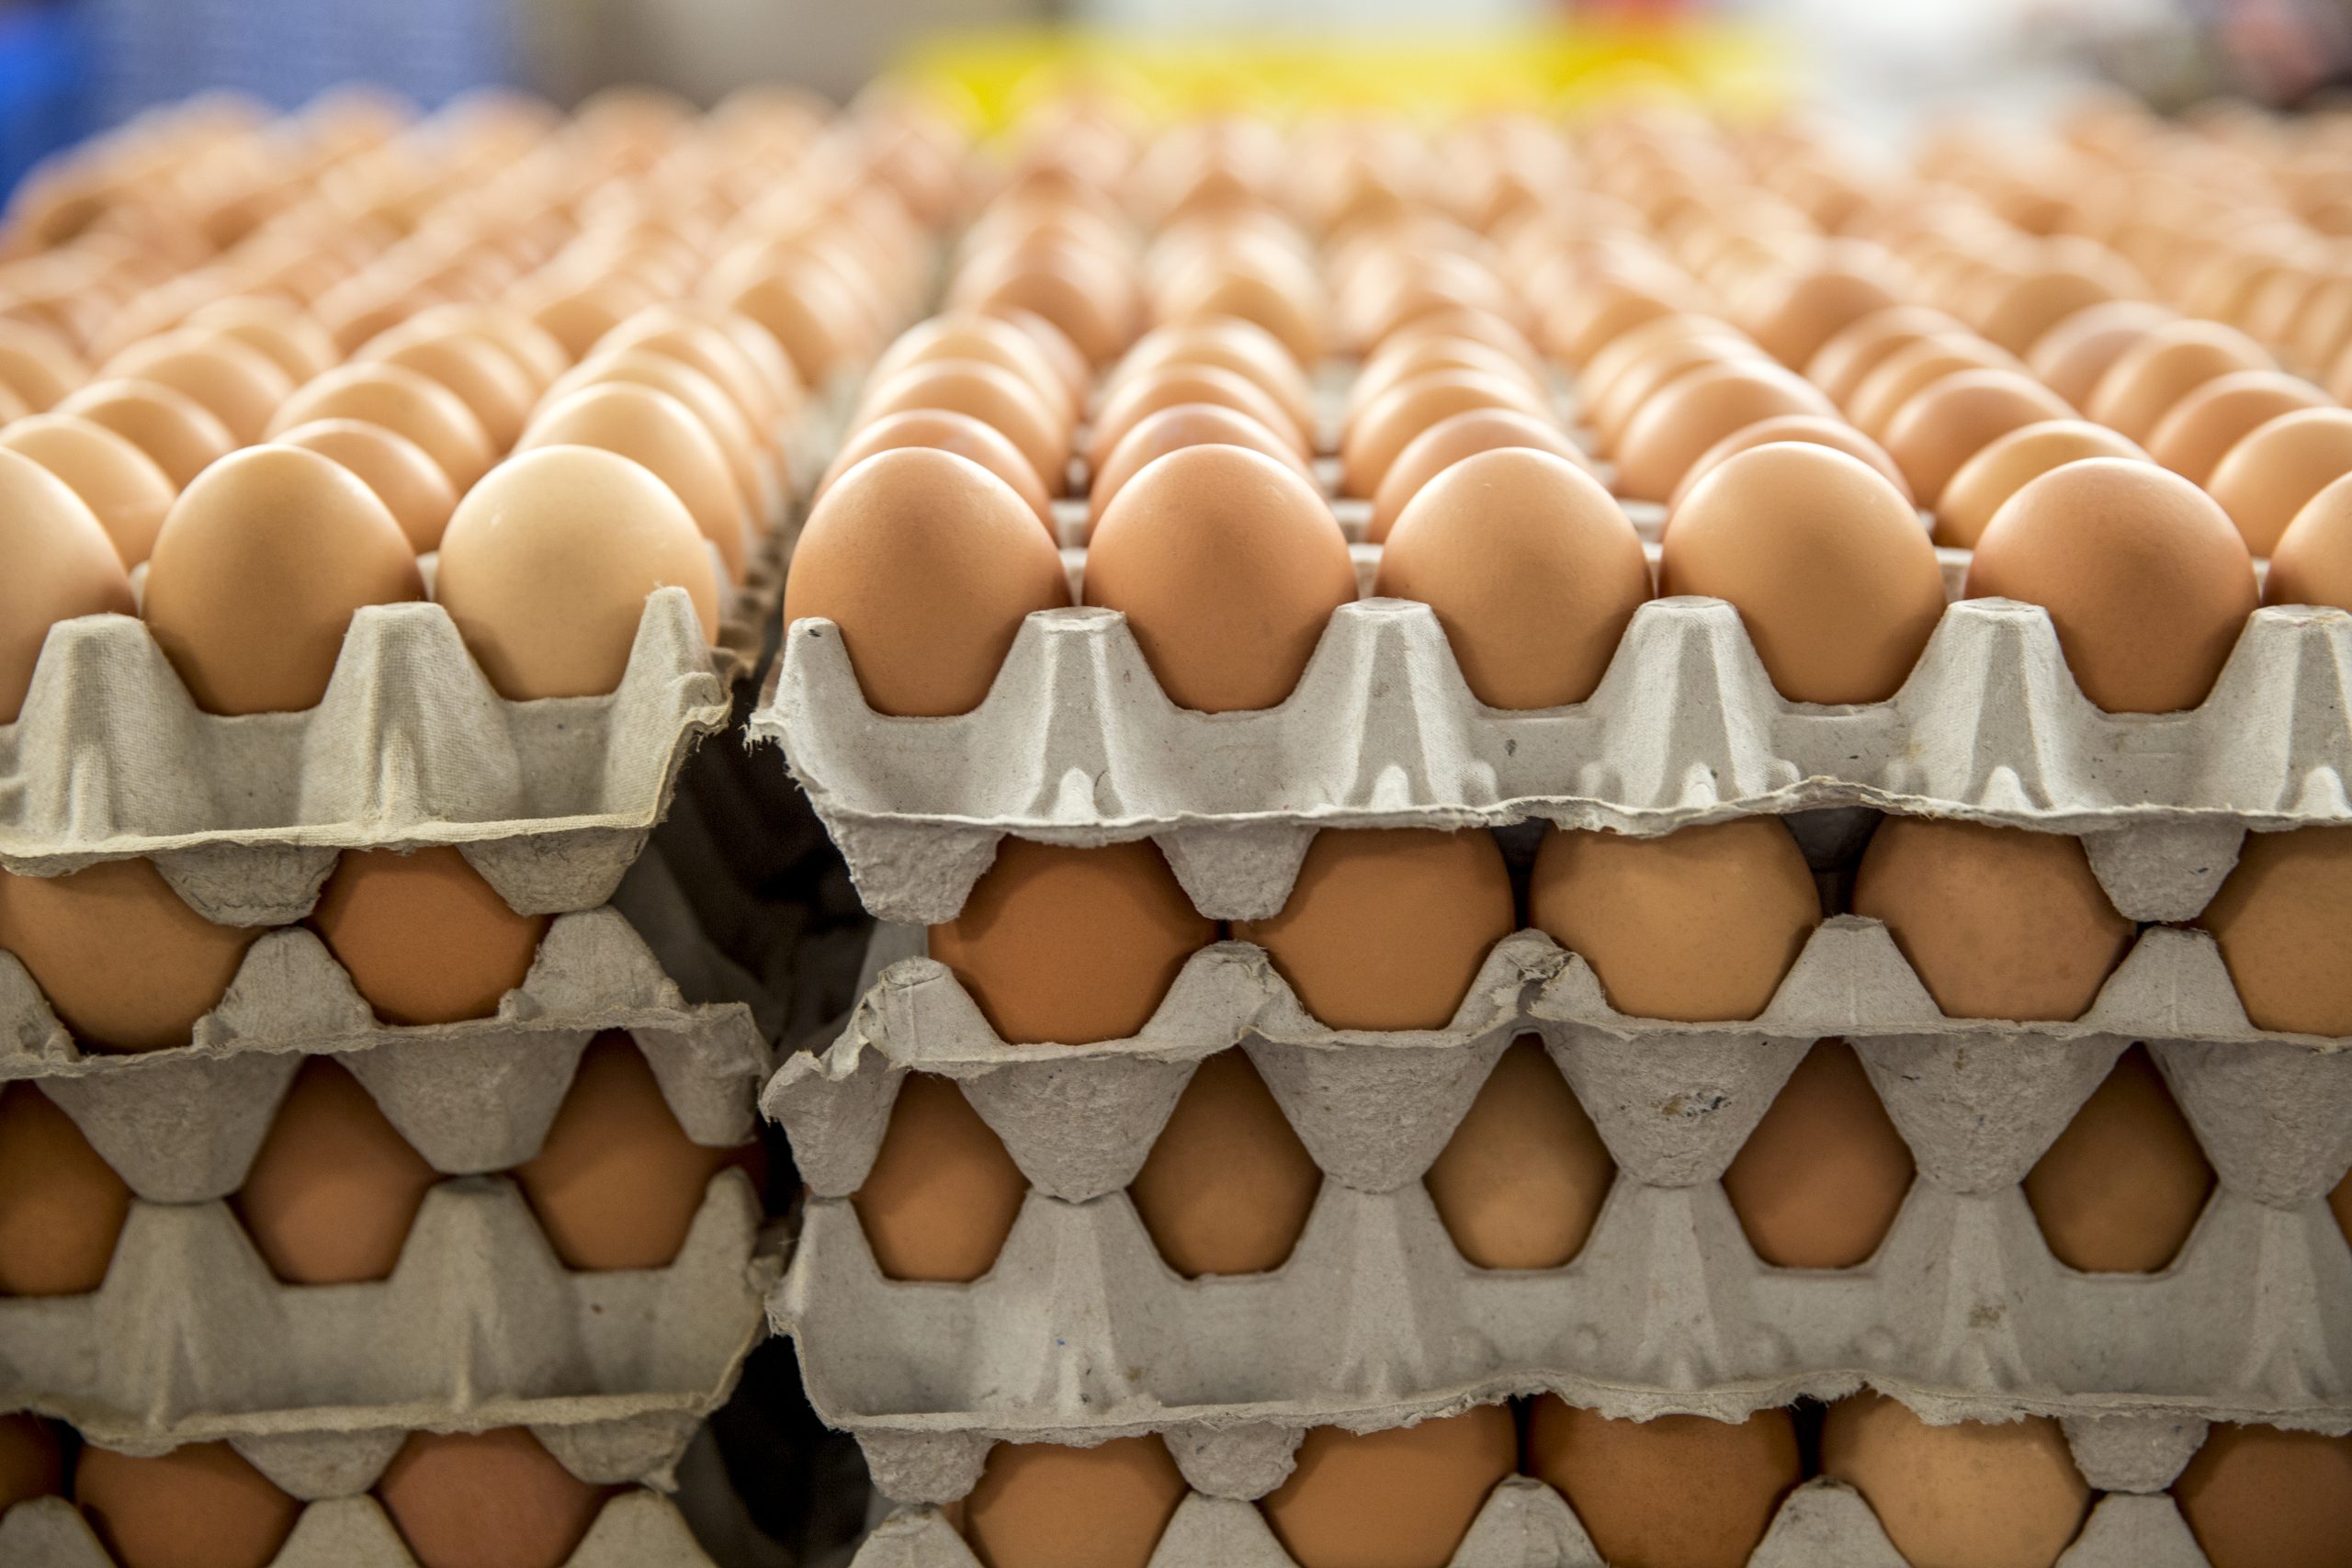 Σκάνδαλο μεγατόνων: Οι «έντιμοι» Βορειοευρωπαίοι κατέκλυσαν την αγορά με εκατομμύρια τοξικά αυγά!